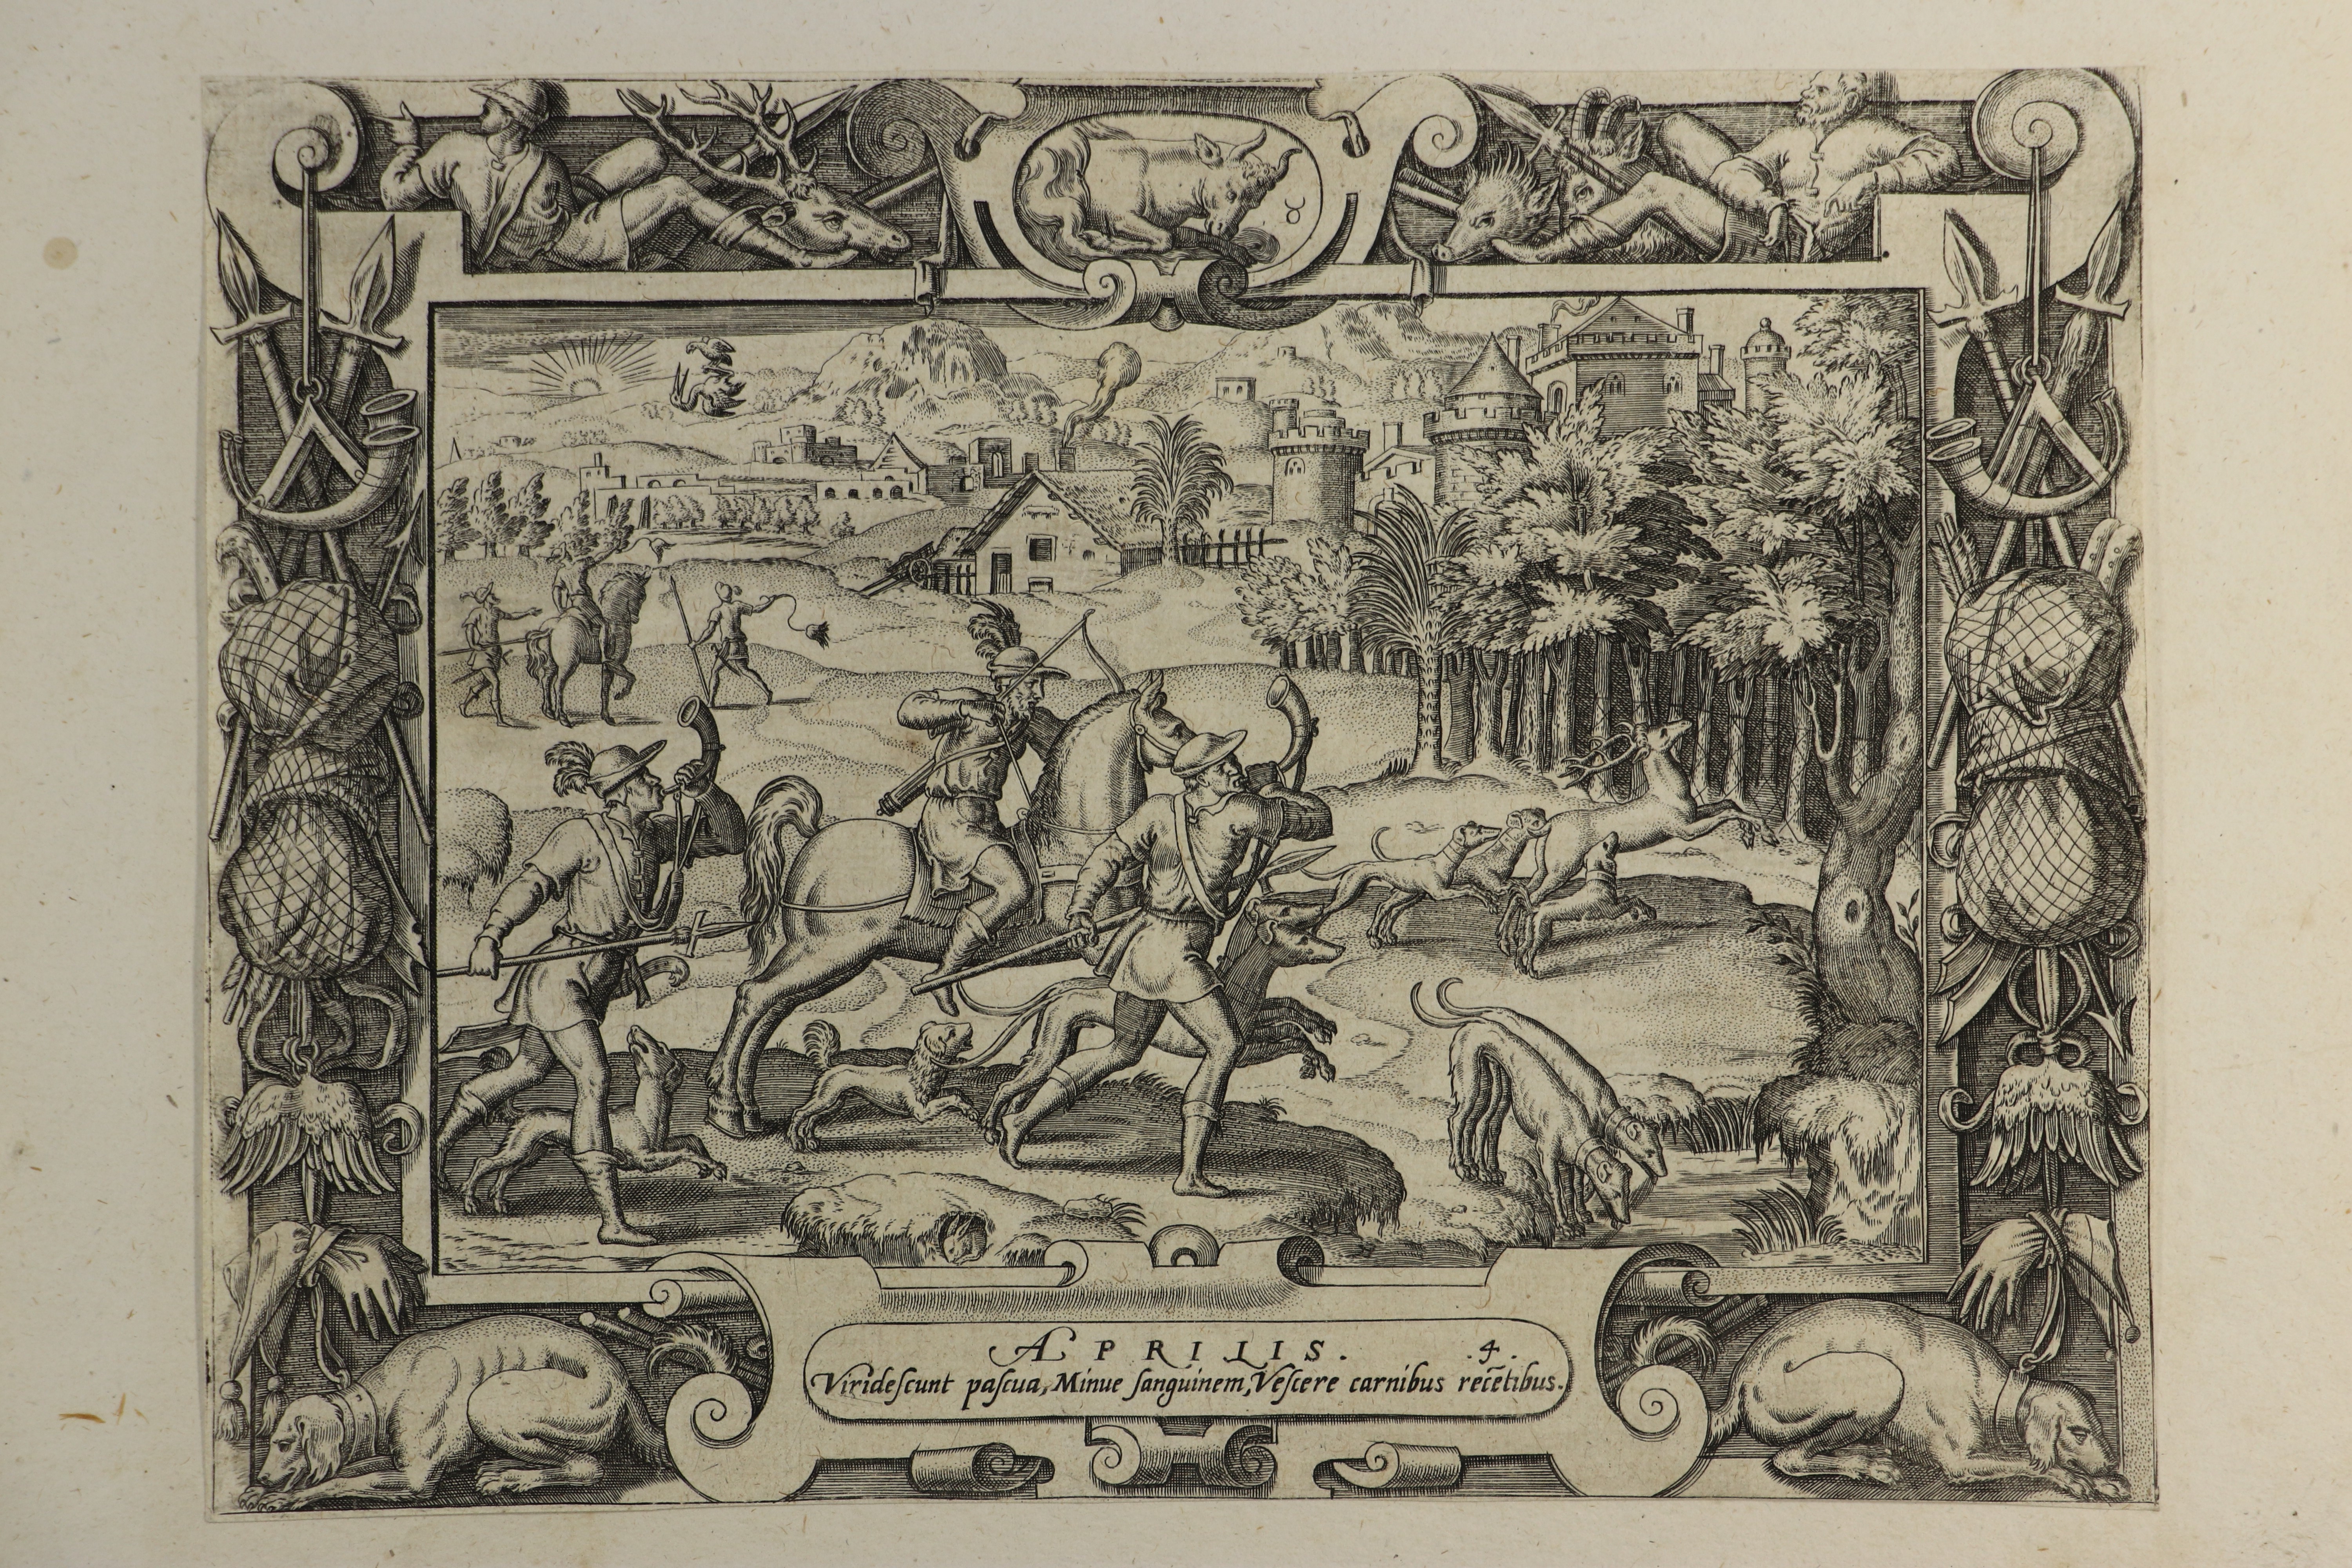 Kalendermonat April mit Jagdzenerie, um 1600 (Städtisches Museum Schloss Rheydt CC BY)